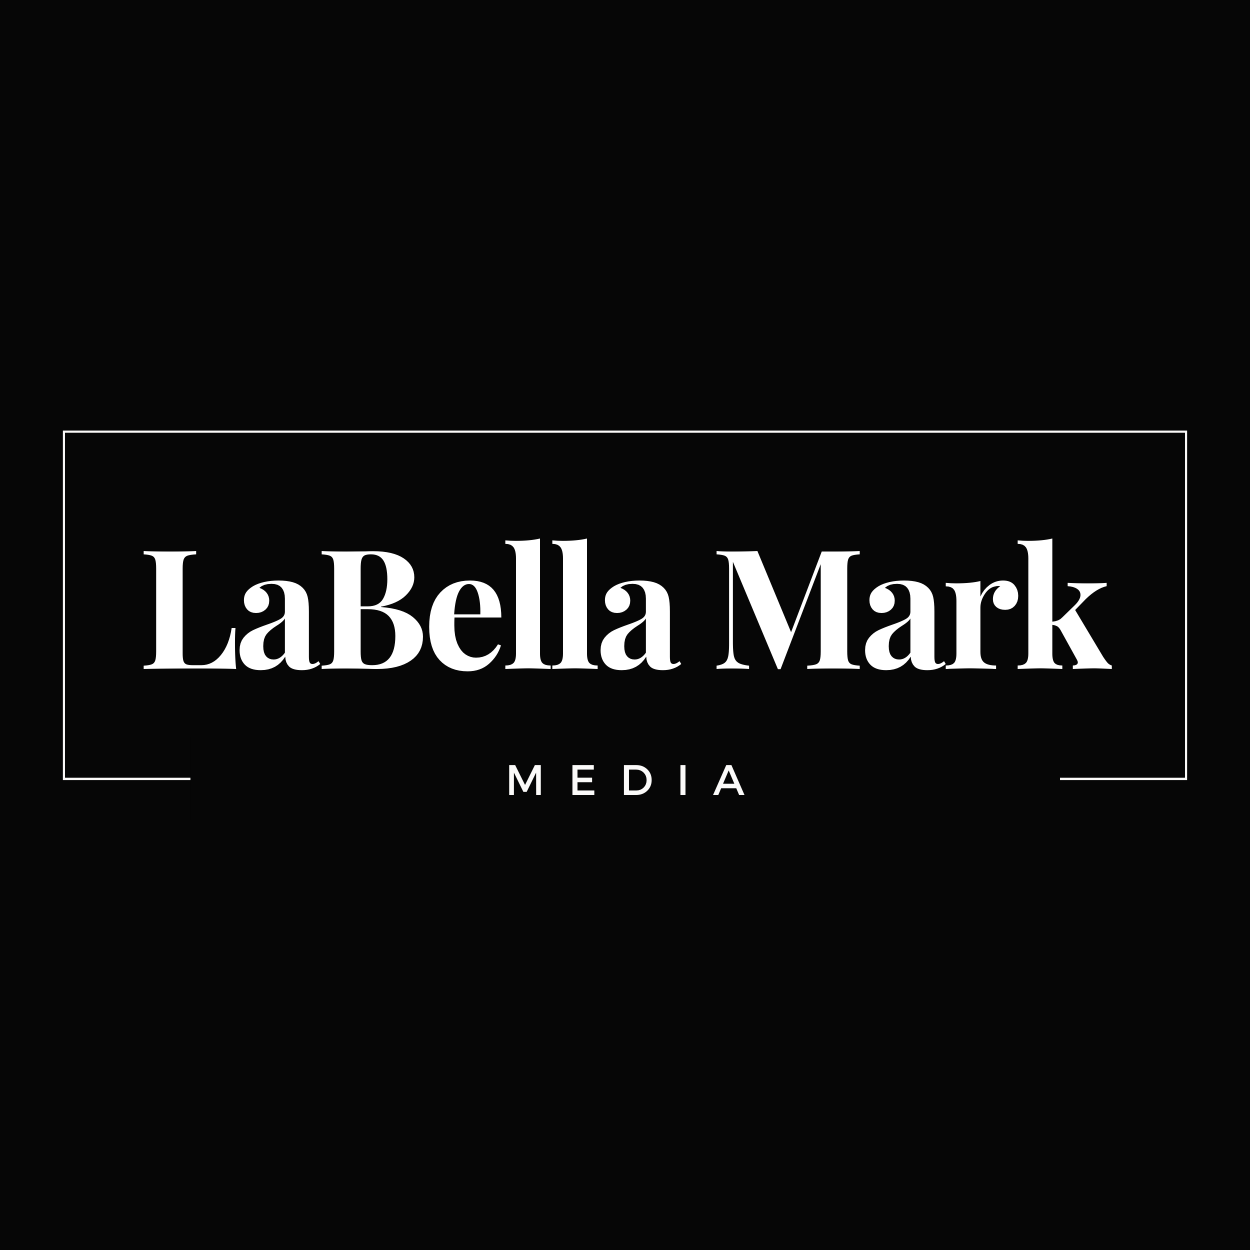 LaBella Mark Media